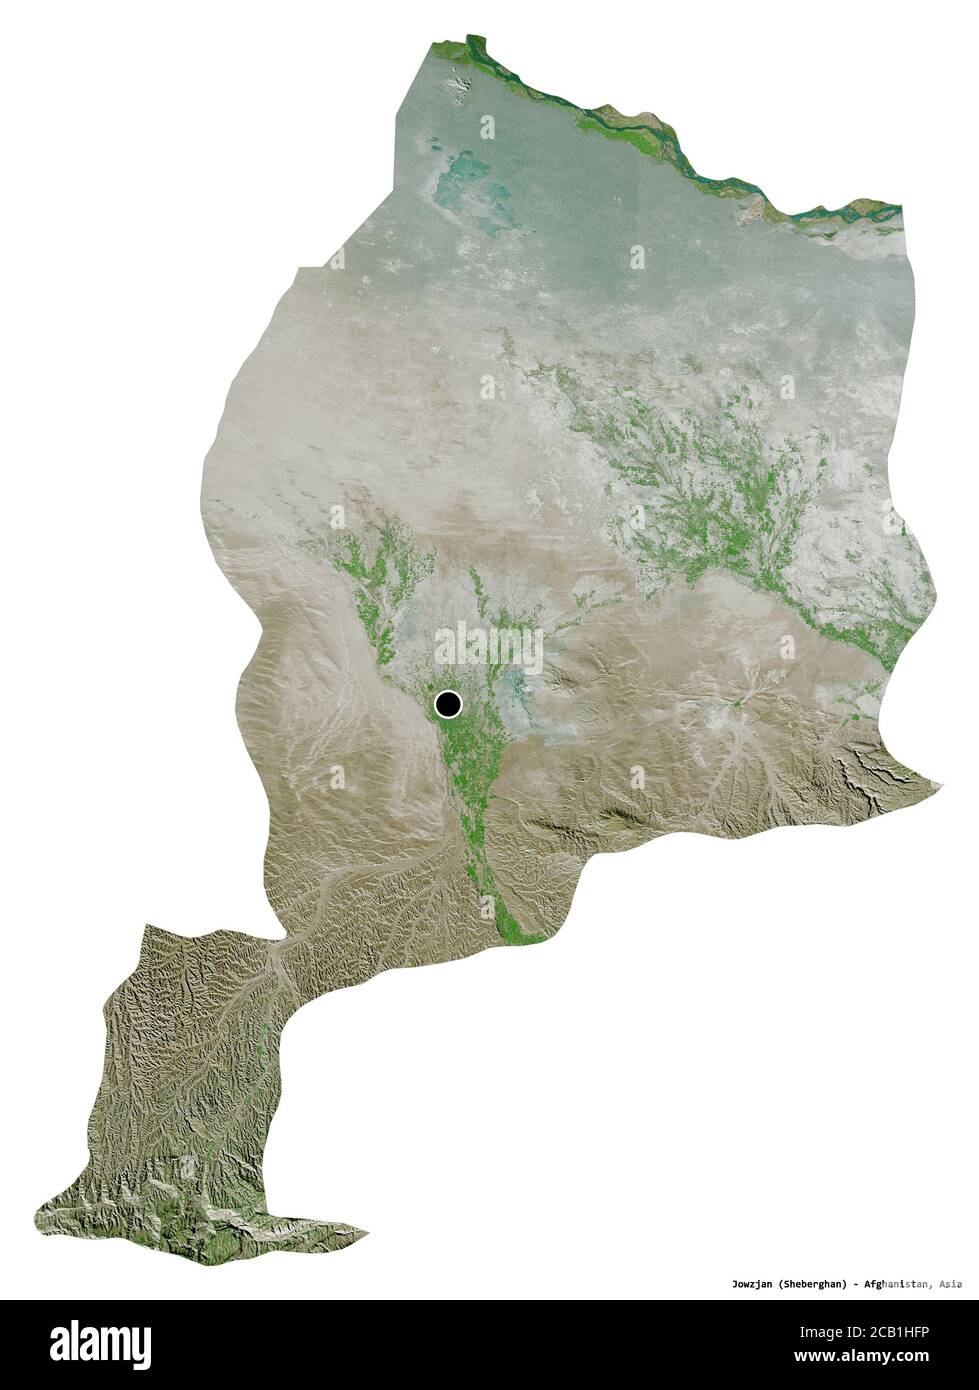 Forma di Jowzjan, provincia dell'Afghanistan, con la sua capitale isolata su sfondo bianco. Immagini satellitari. Rendering 3D Foto Stock